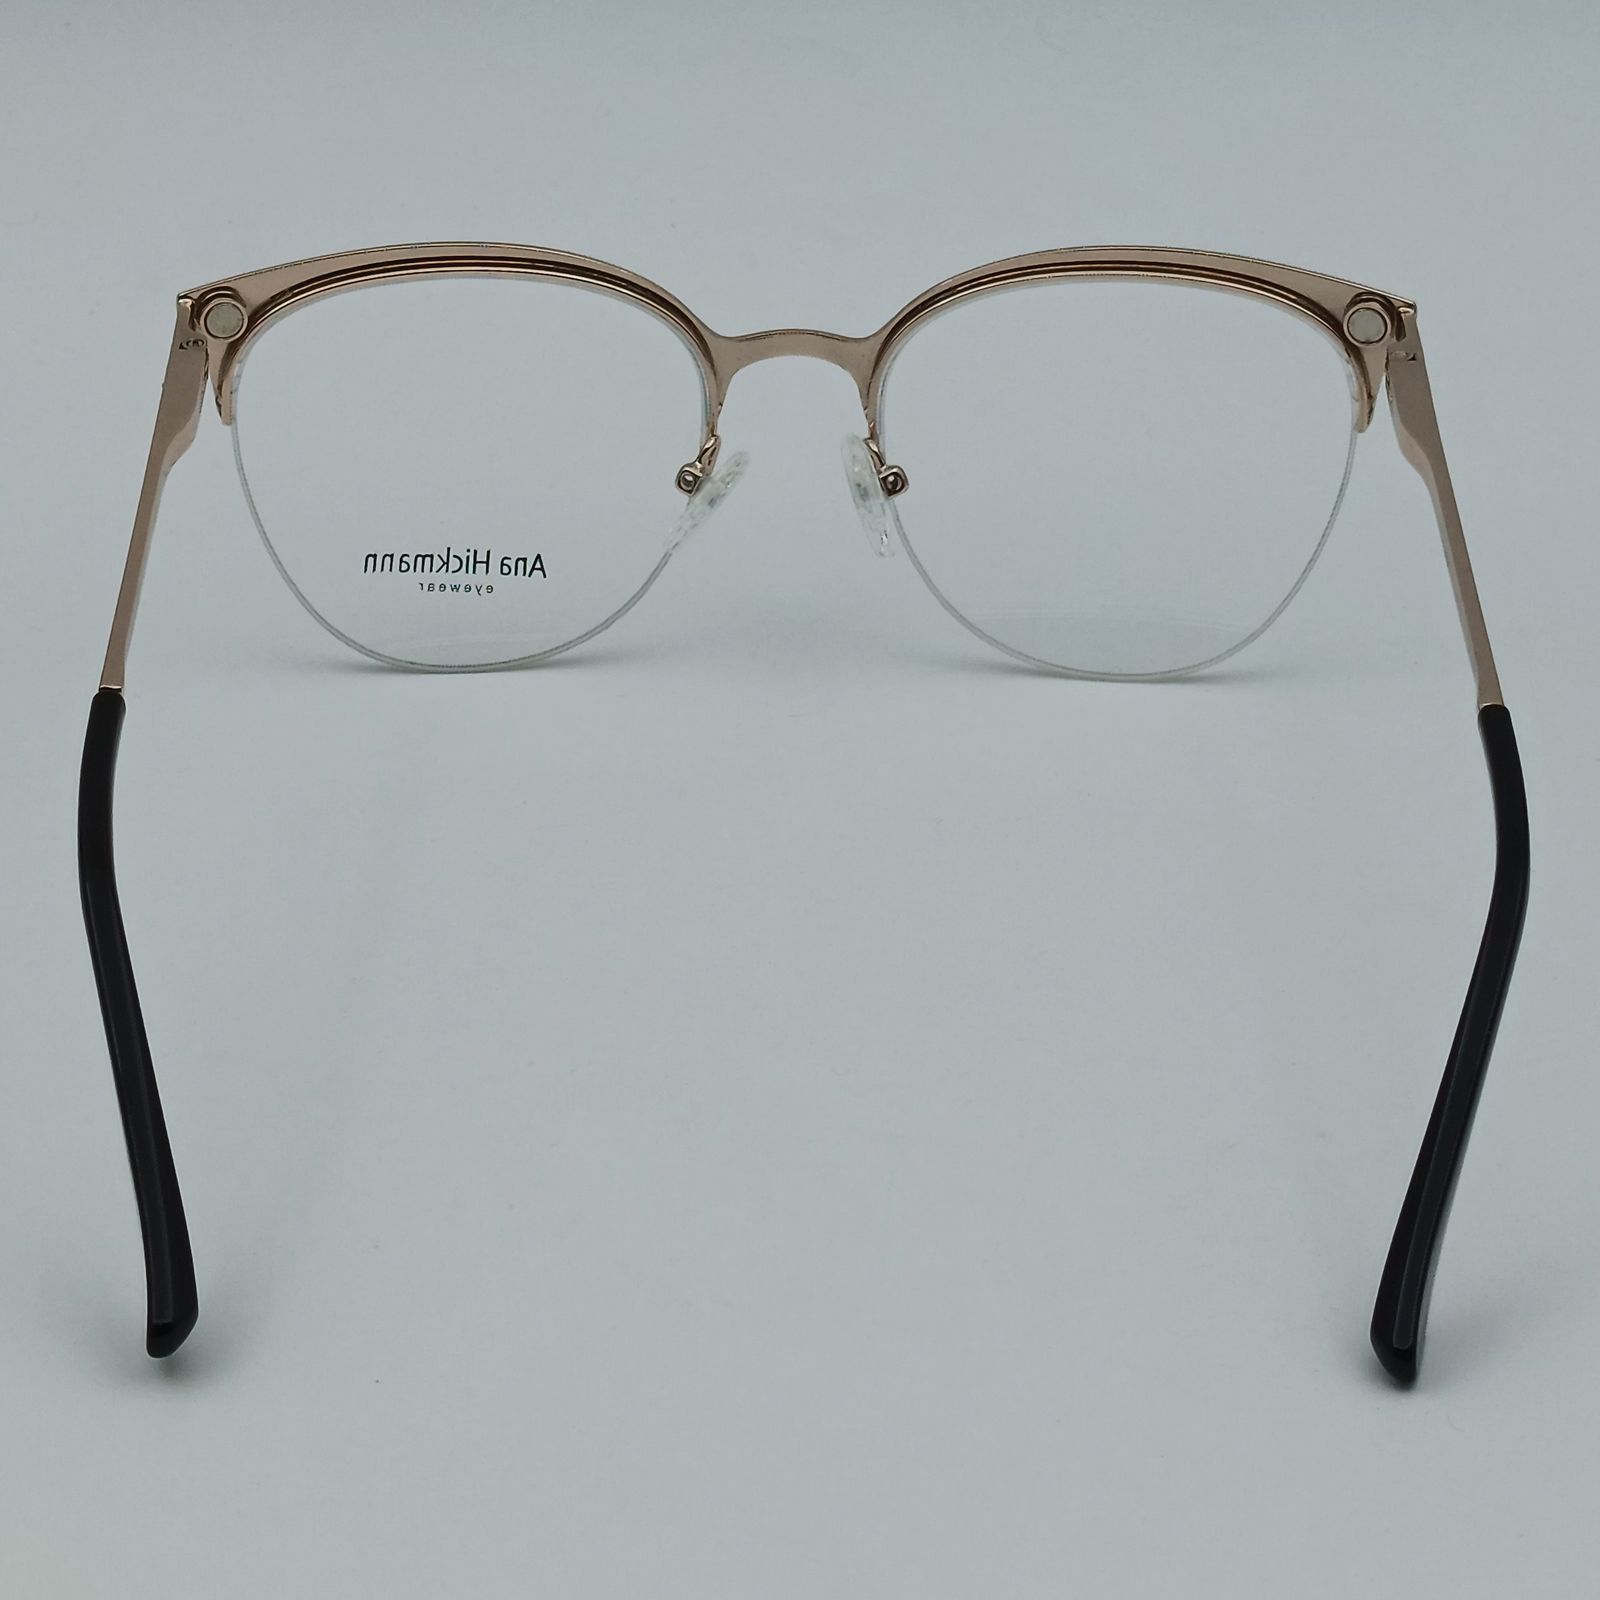 فریم عینک طبی زنانه آناهیکمن مدل FNA003 C1 به همراه کاور آفتابی -  - 8